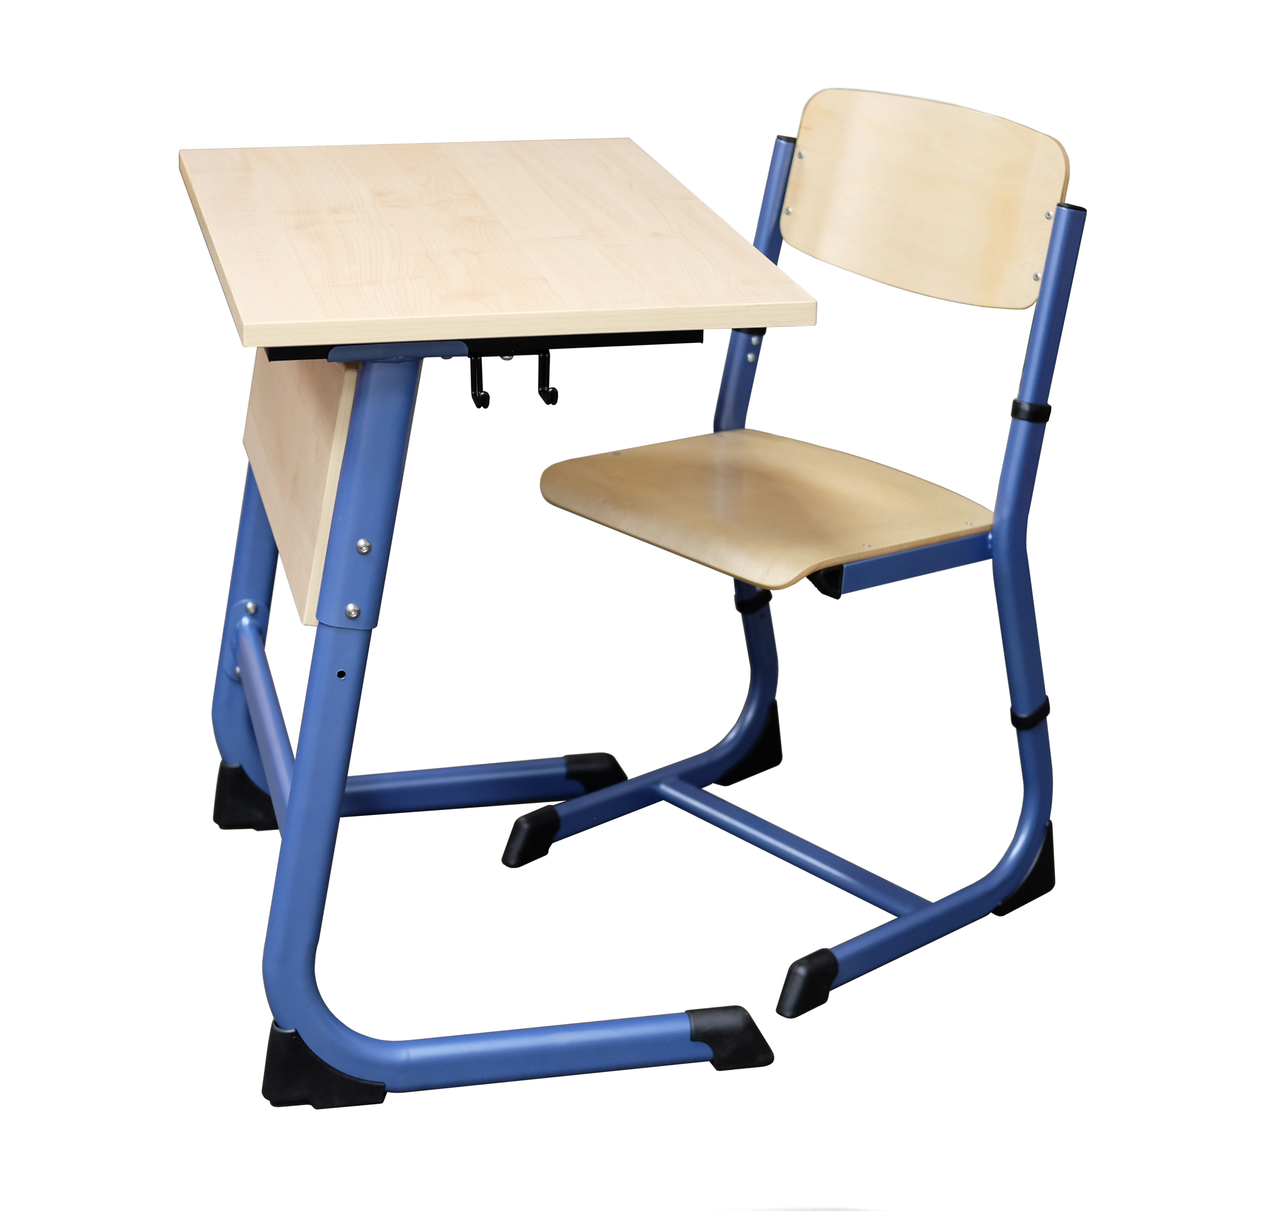 Купить стул ученический. Стол Оптима 1-местный регулируемый Оптима1.10. Стол ученический «Оптима». Стул ученический Оптима фиксируемый 6. Стул Оптима ученический регулируемый.